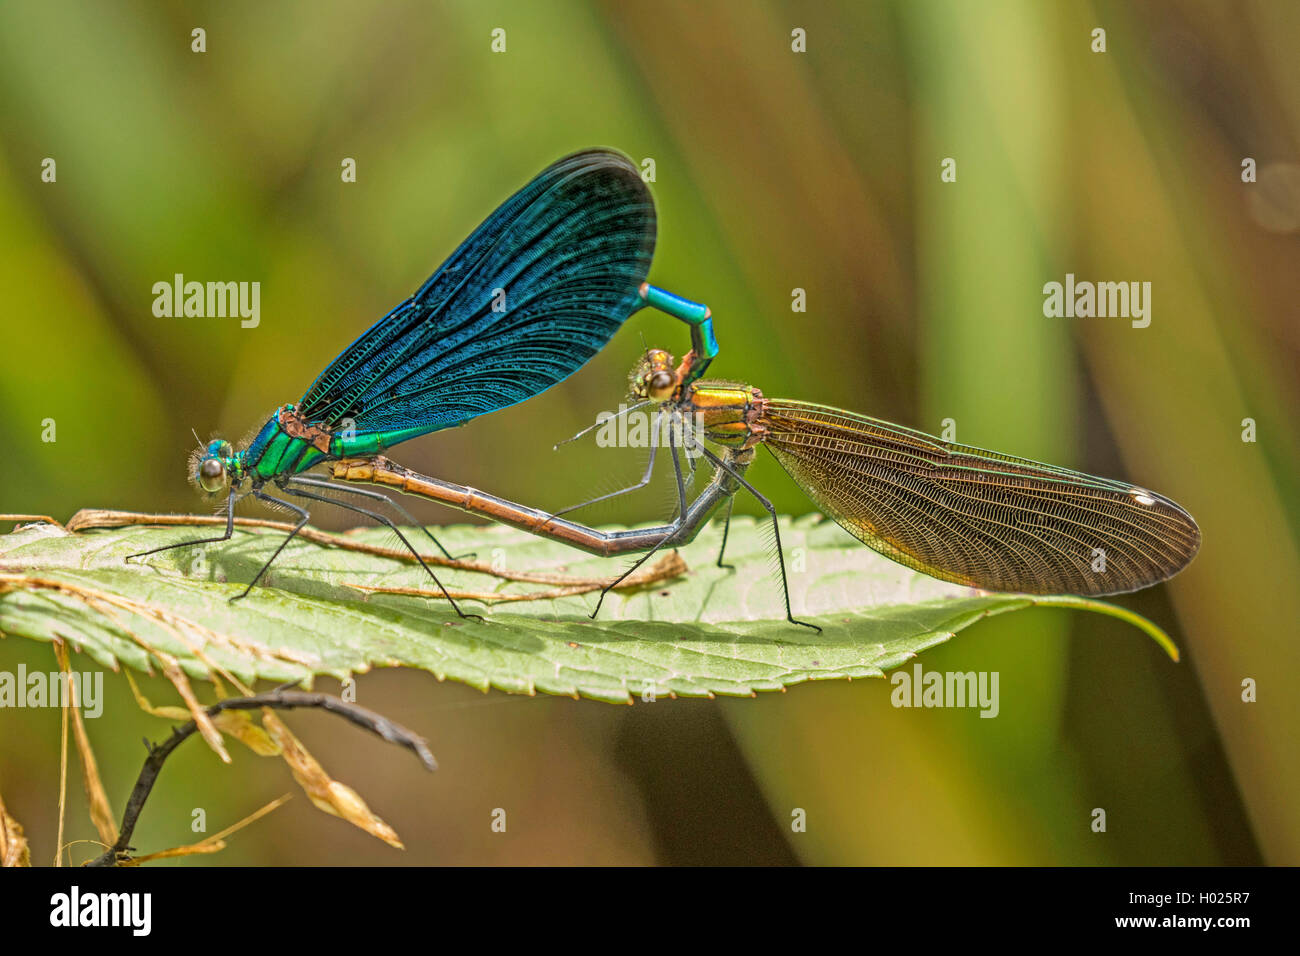 Blaufluegel-Prachtlibelle, Blaufluegelprachtlibelle (Calopteryx virgo), Paarung auf einem Blatt, Paarungsrad, Deutschland, Bayer Stock Photo